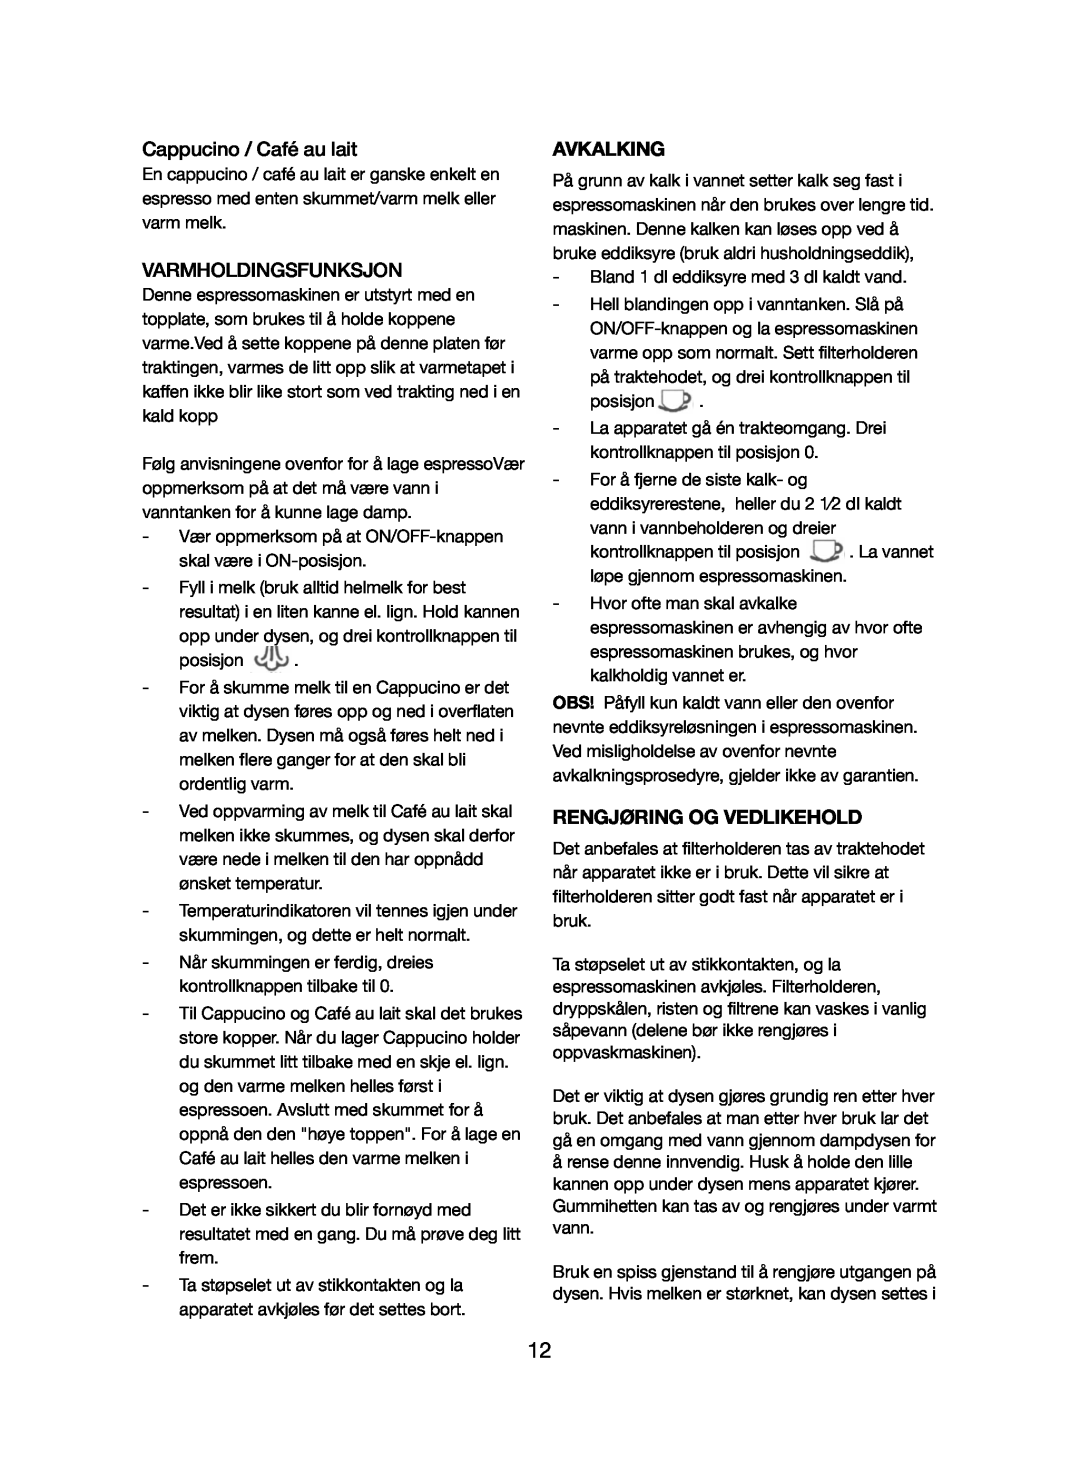 Melissa 245-032 manual Varmholdingsfunksjon, Avkalking, Rengjøring Og Vedlikehold, Cappucino / Café au lait 